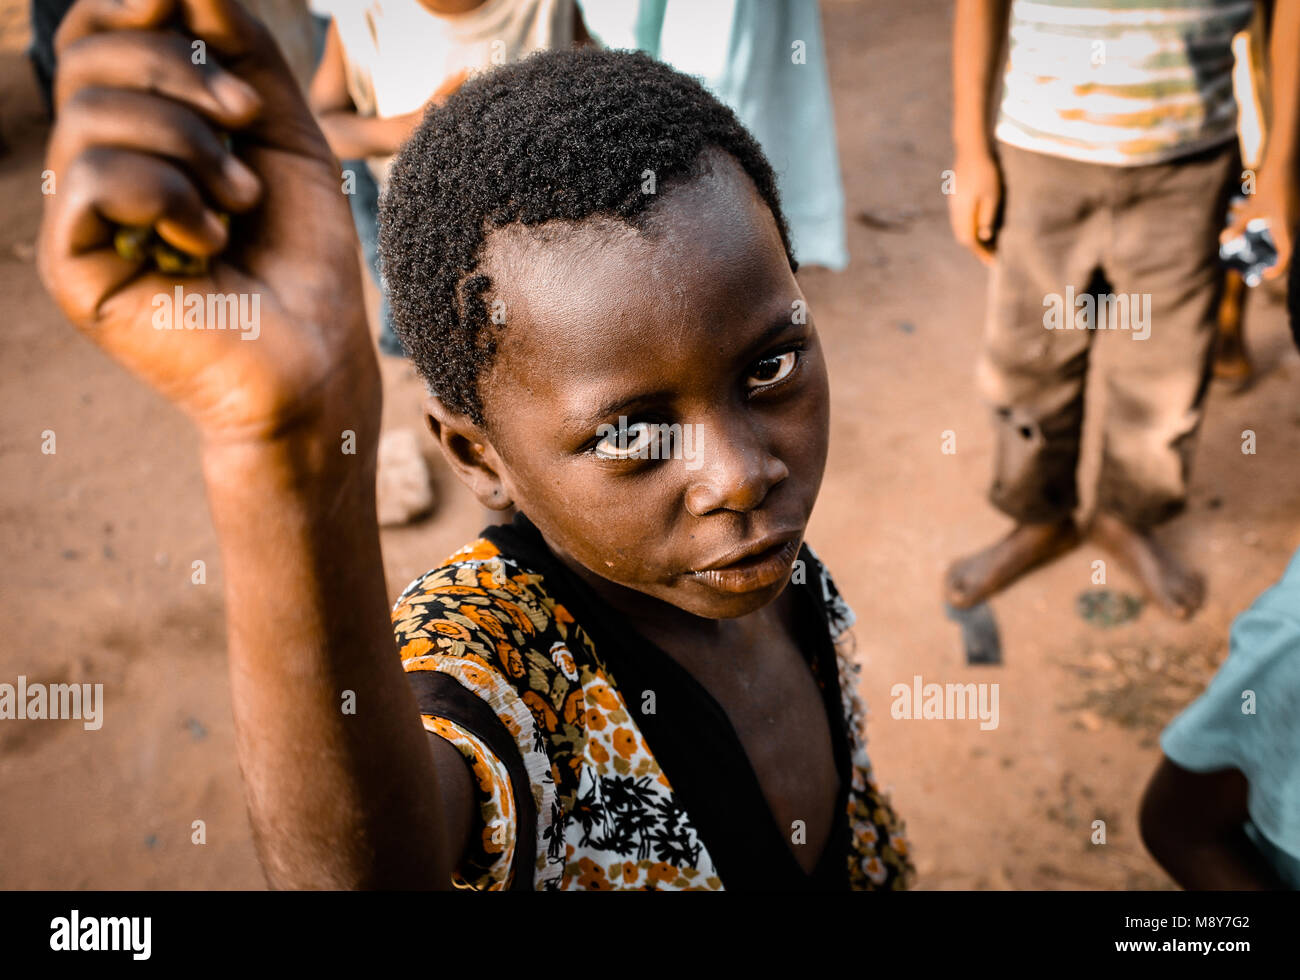 Un africano colorati bambino chiede aiuto come egli è ritratto intensamente fissando la lente della fotocamera, in un villaggio nei pressi di Watamu, Kenya, Africa Foto Stock